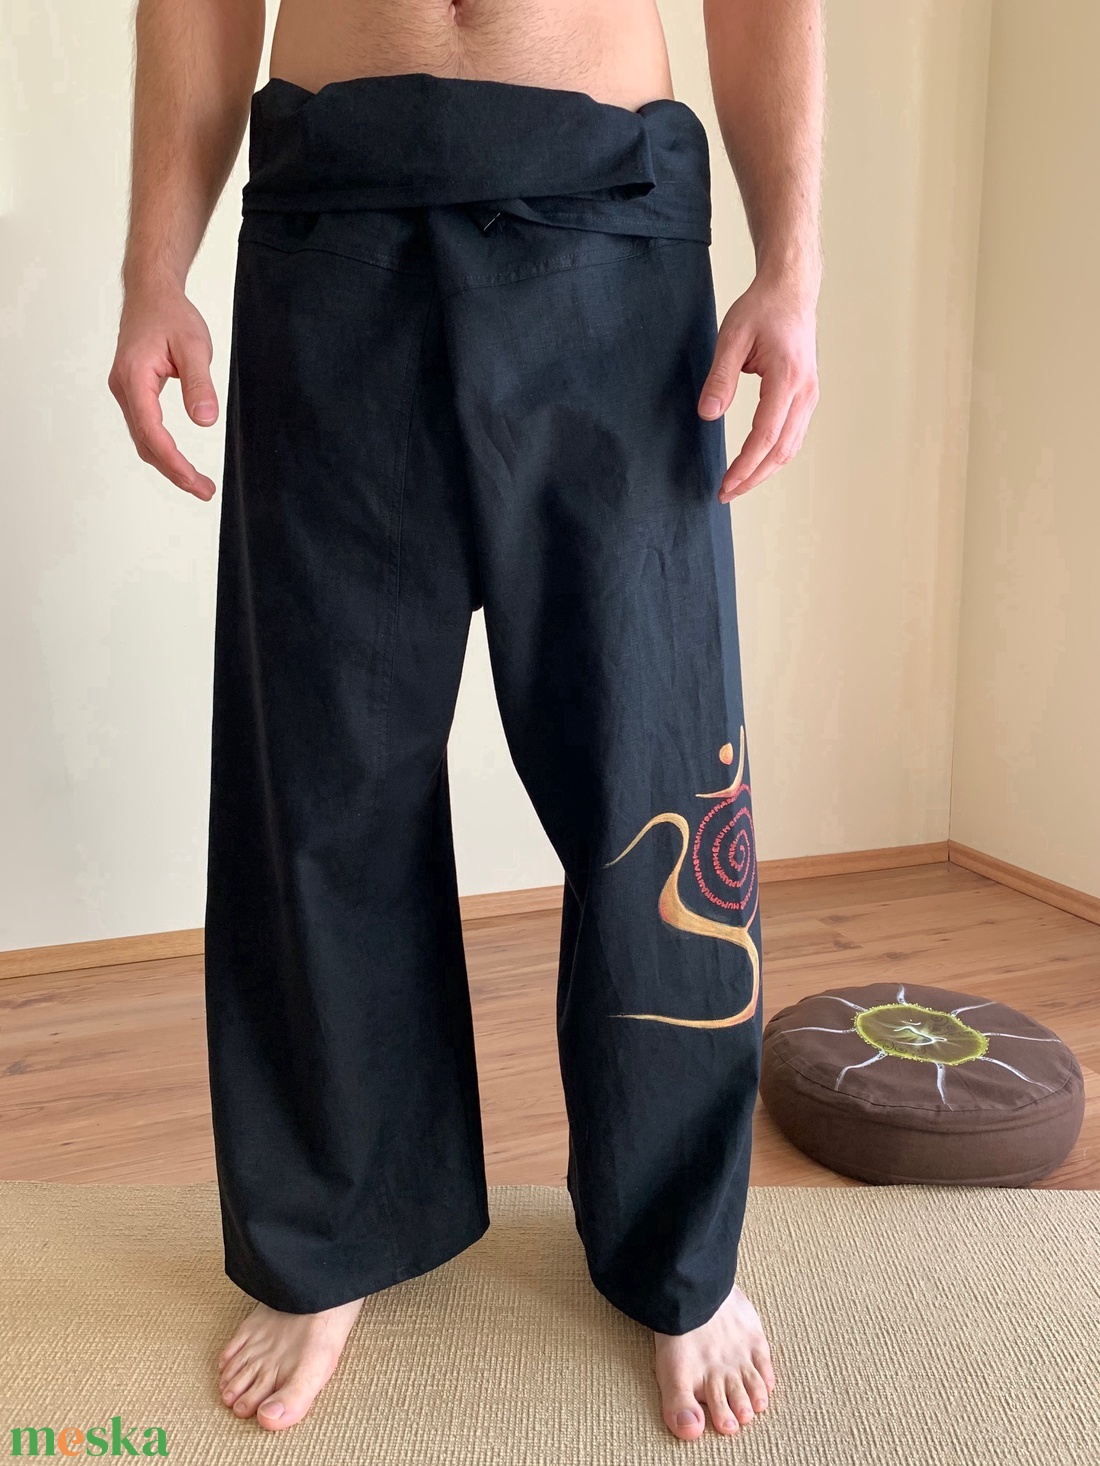 Thai jóga és masszázs nadrág - ruha & divat - férfi ruha - nadrág - Meska.hu